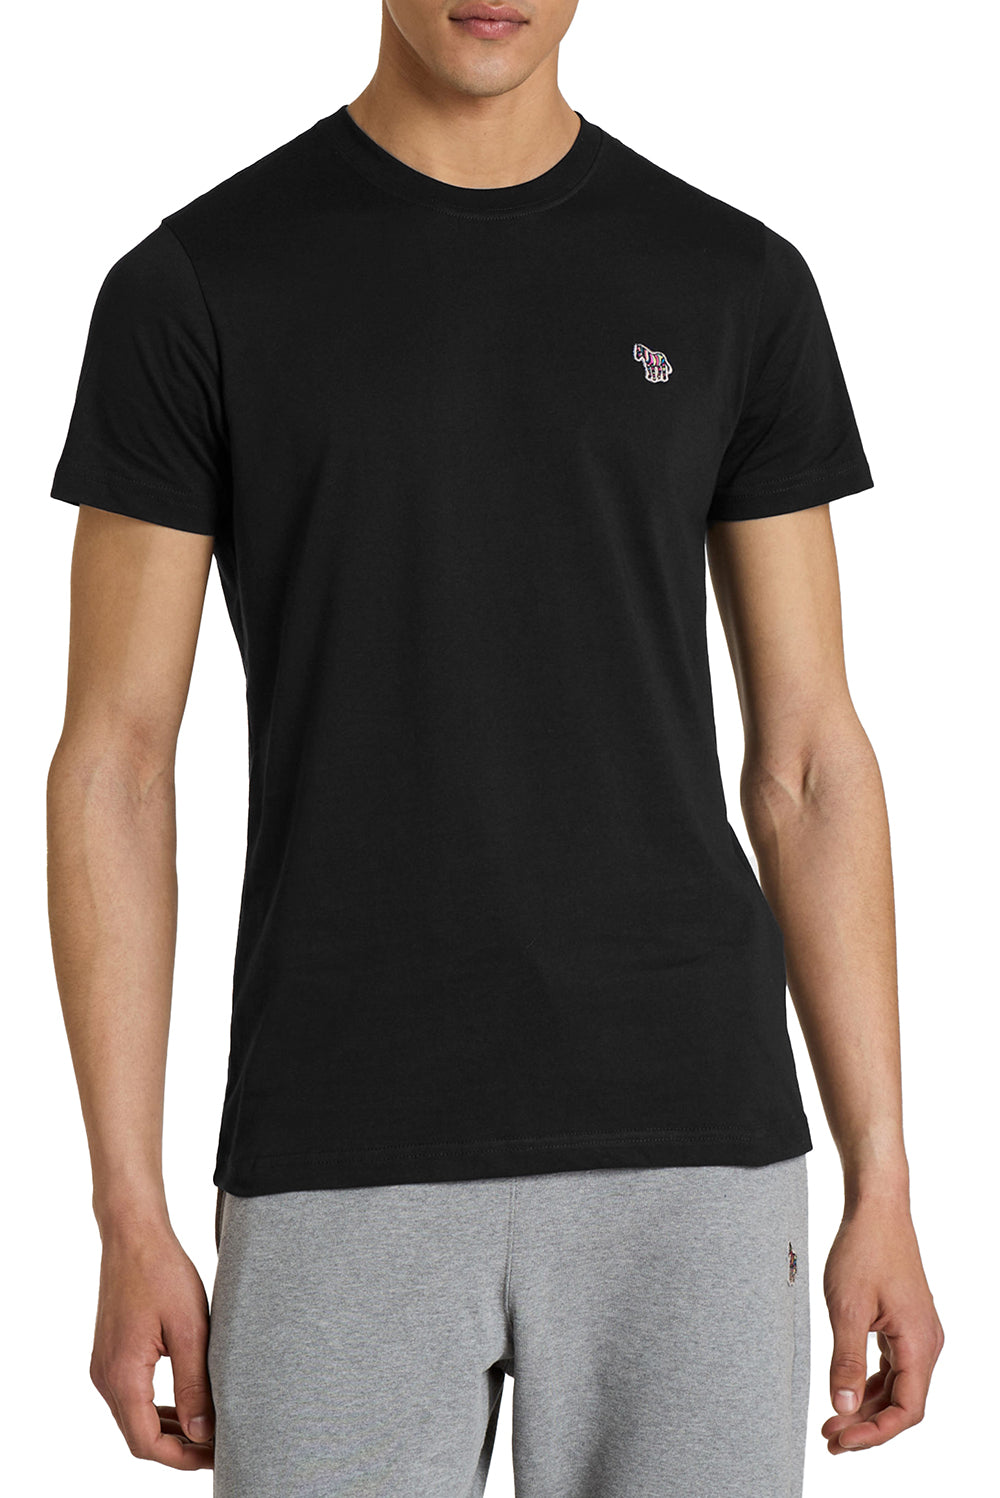  Paul Smith T-shirt Con Logo Black Uomo - 2